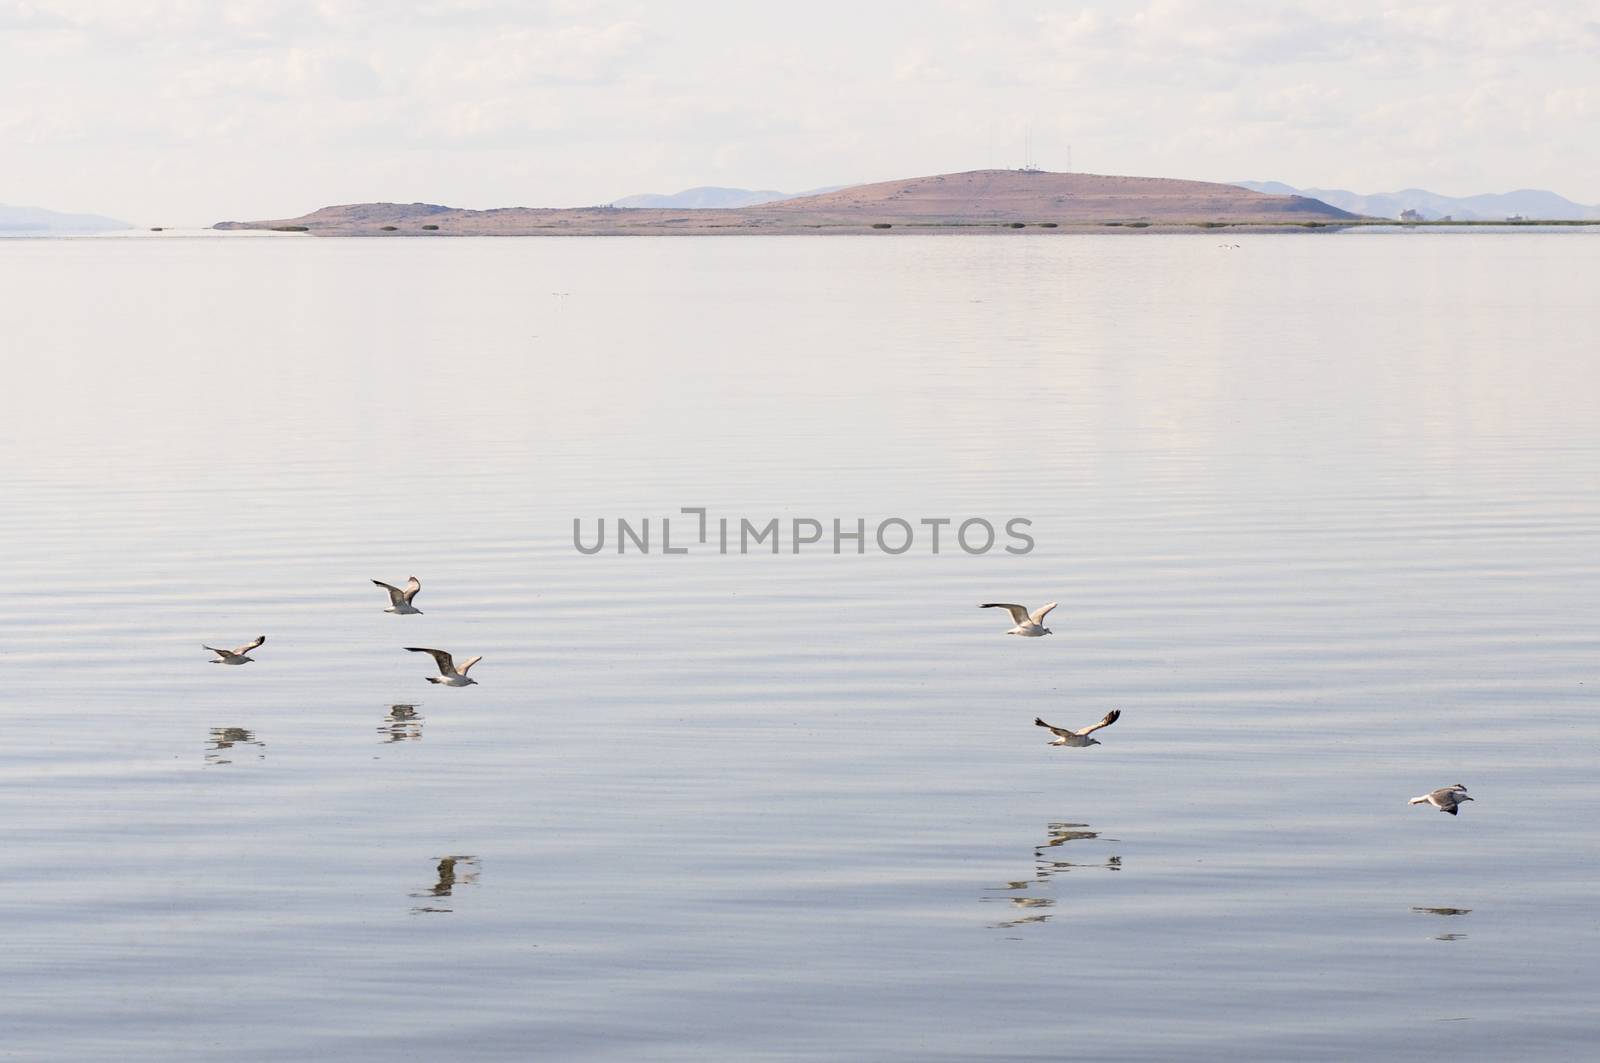 Gulls flying over the Great Salt Lake, Antelope Island State Park in Salt Lake City, Utah